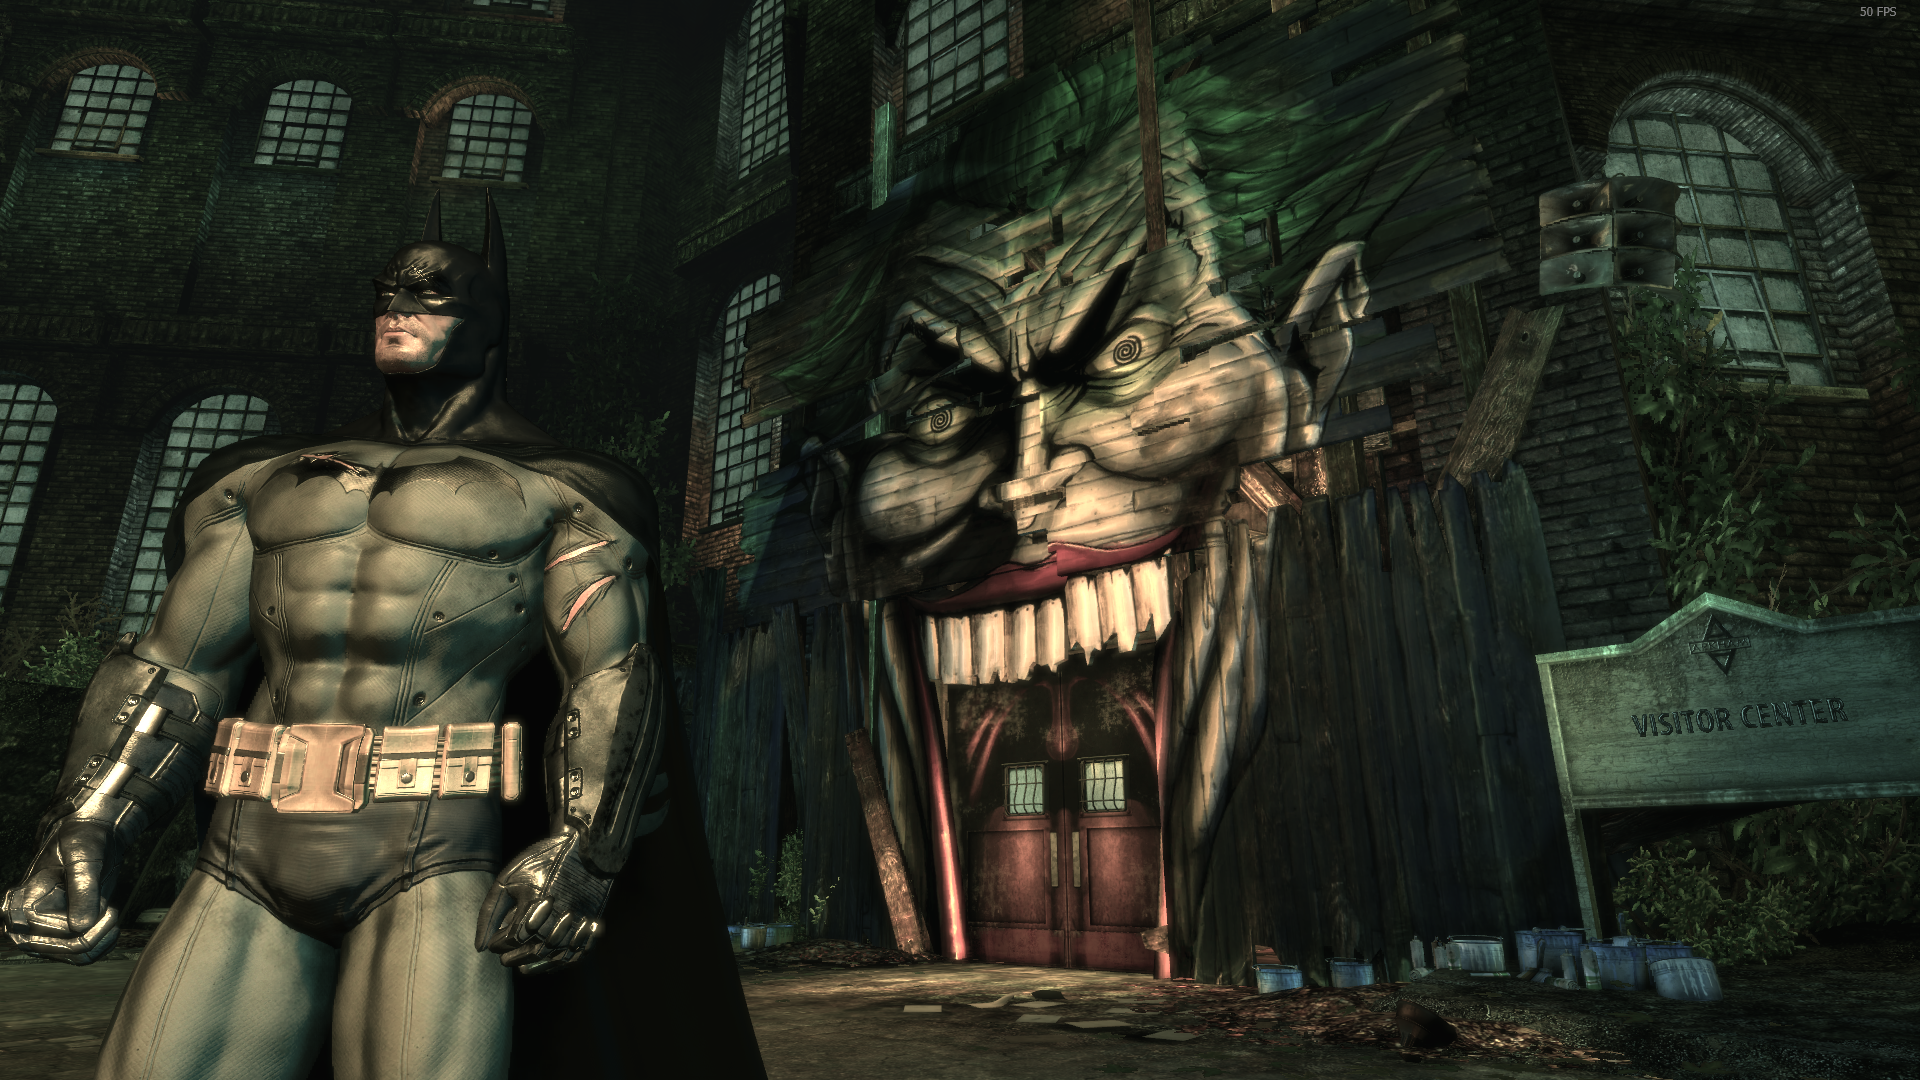 Бэтмен аркхам асайлум. Бэтмен Аркхем асилум. 1.1.1 Batman: Arkham Asylum. Бэтмен Аркхем асилум Бэтмен.